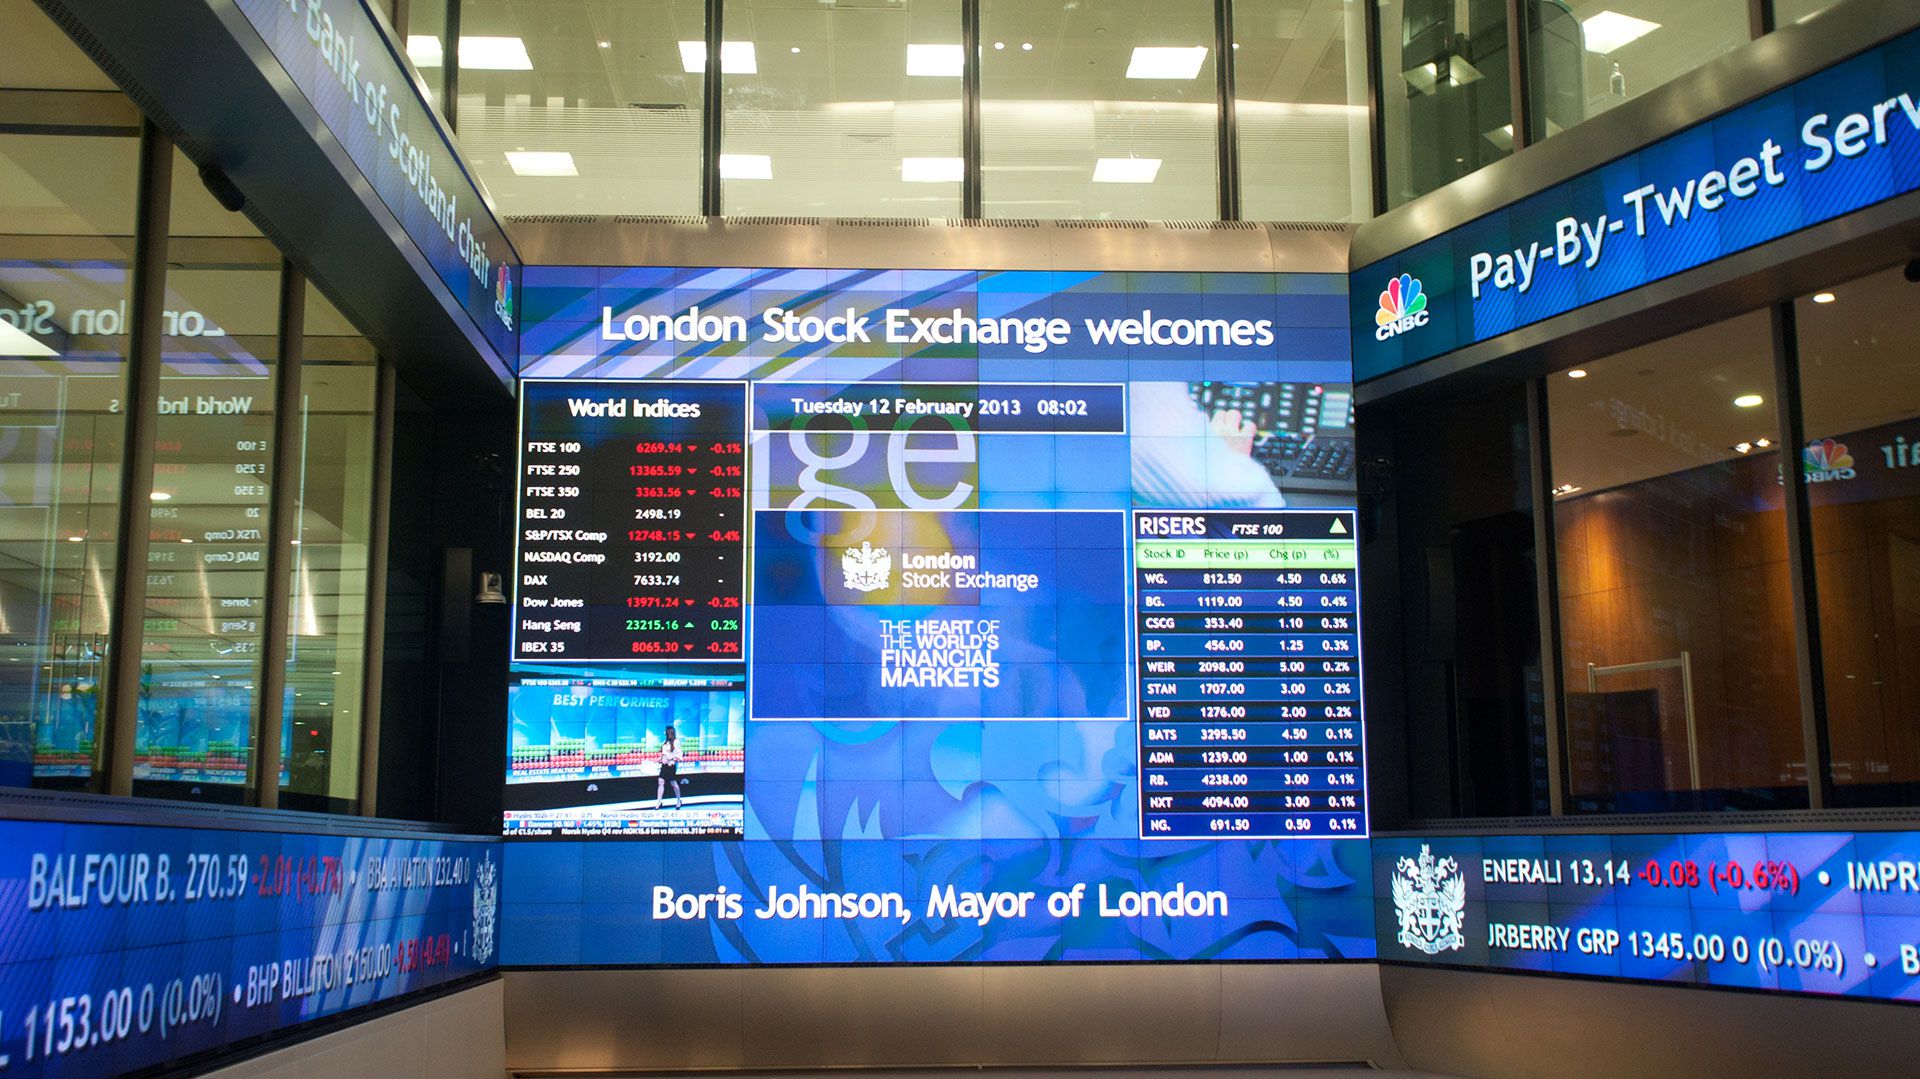 Una imagen de la bolsa londinense, cuando Boris Johnson era aún el alcalde de la ciudad. Ahora es el primer ministro británico y finalmente acordó el "Brexit"
Bolsa de Londres (shutterstock)